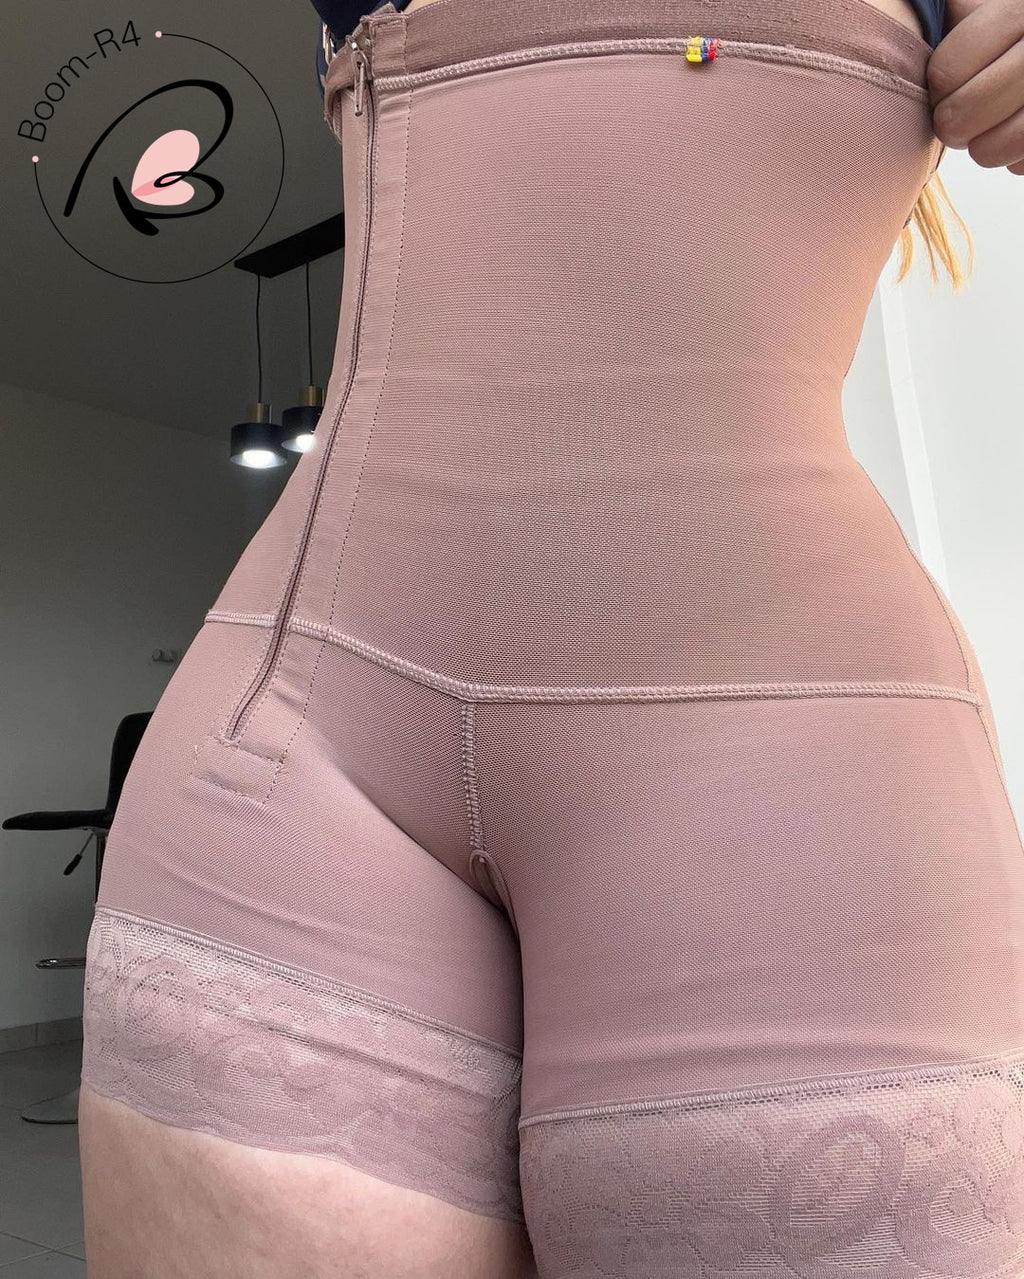 Padded Hip Butt Lifter Panties High Waist Trainer for Women Tummy